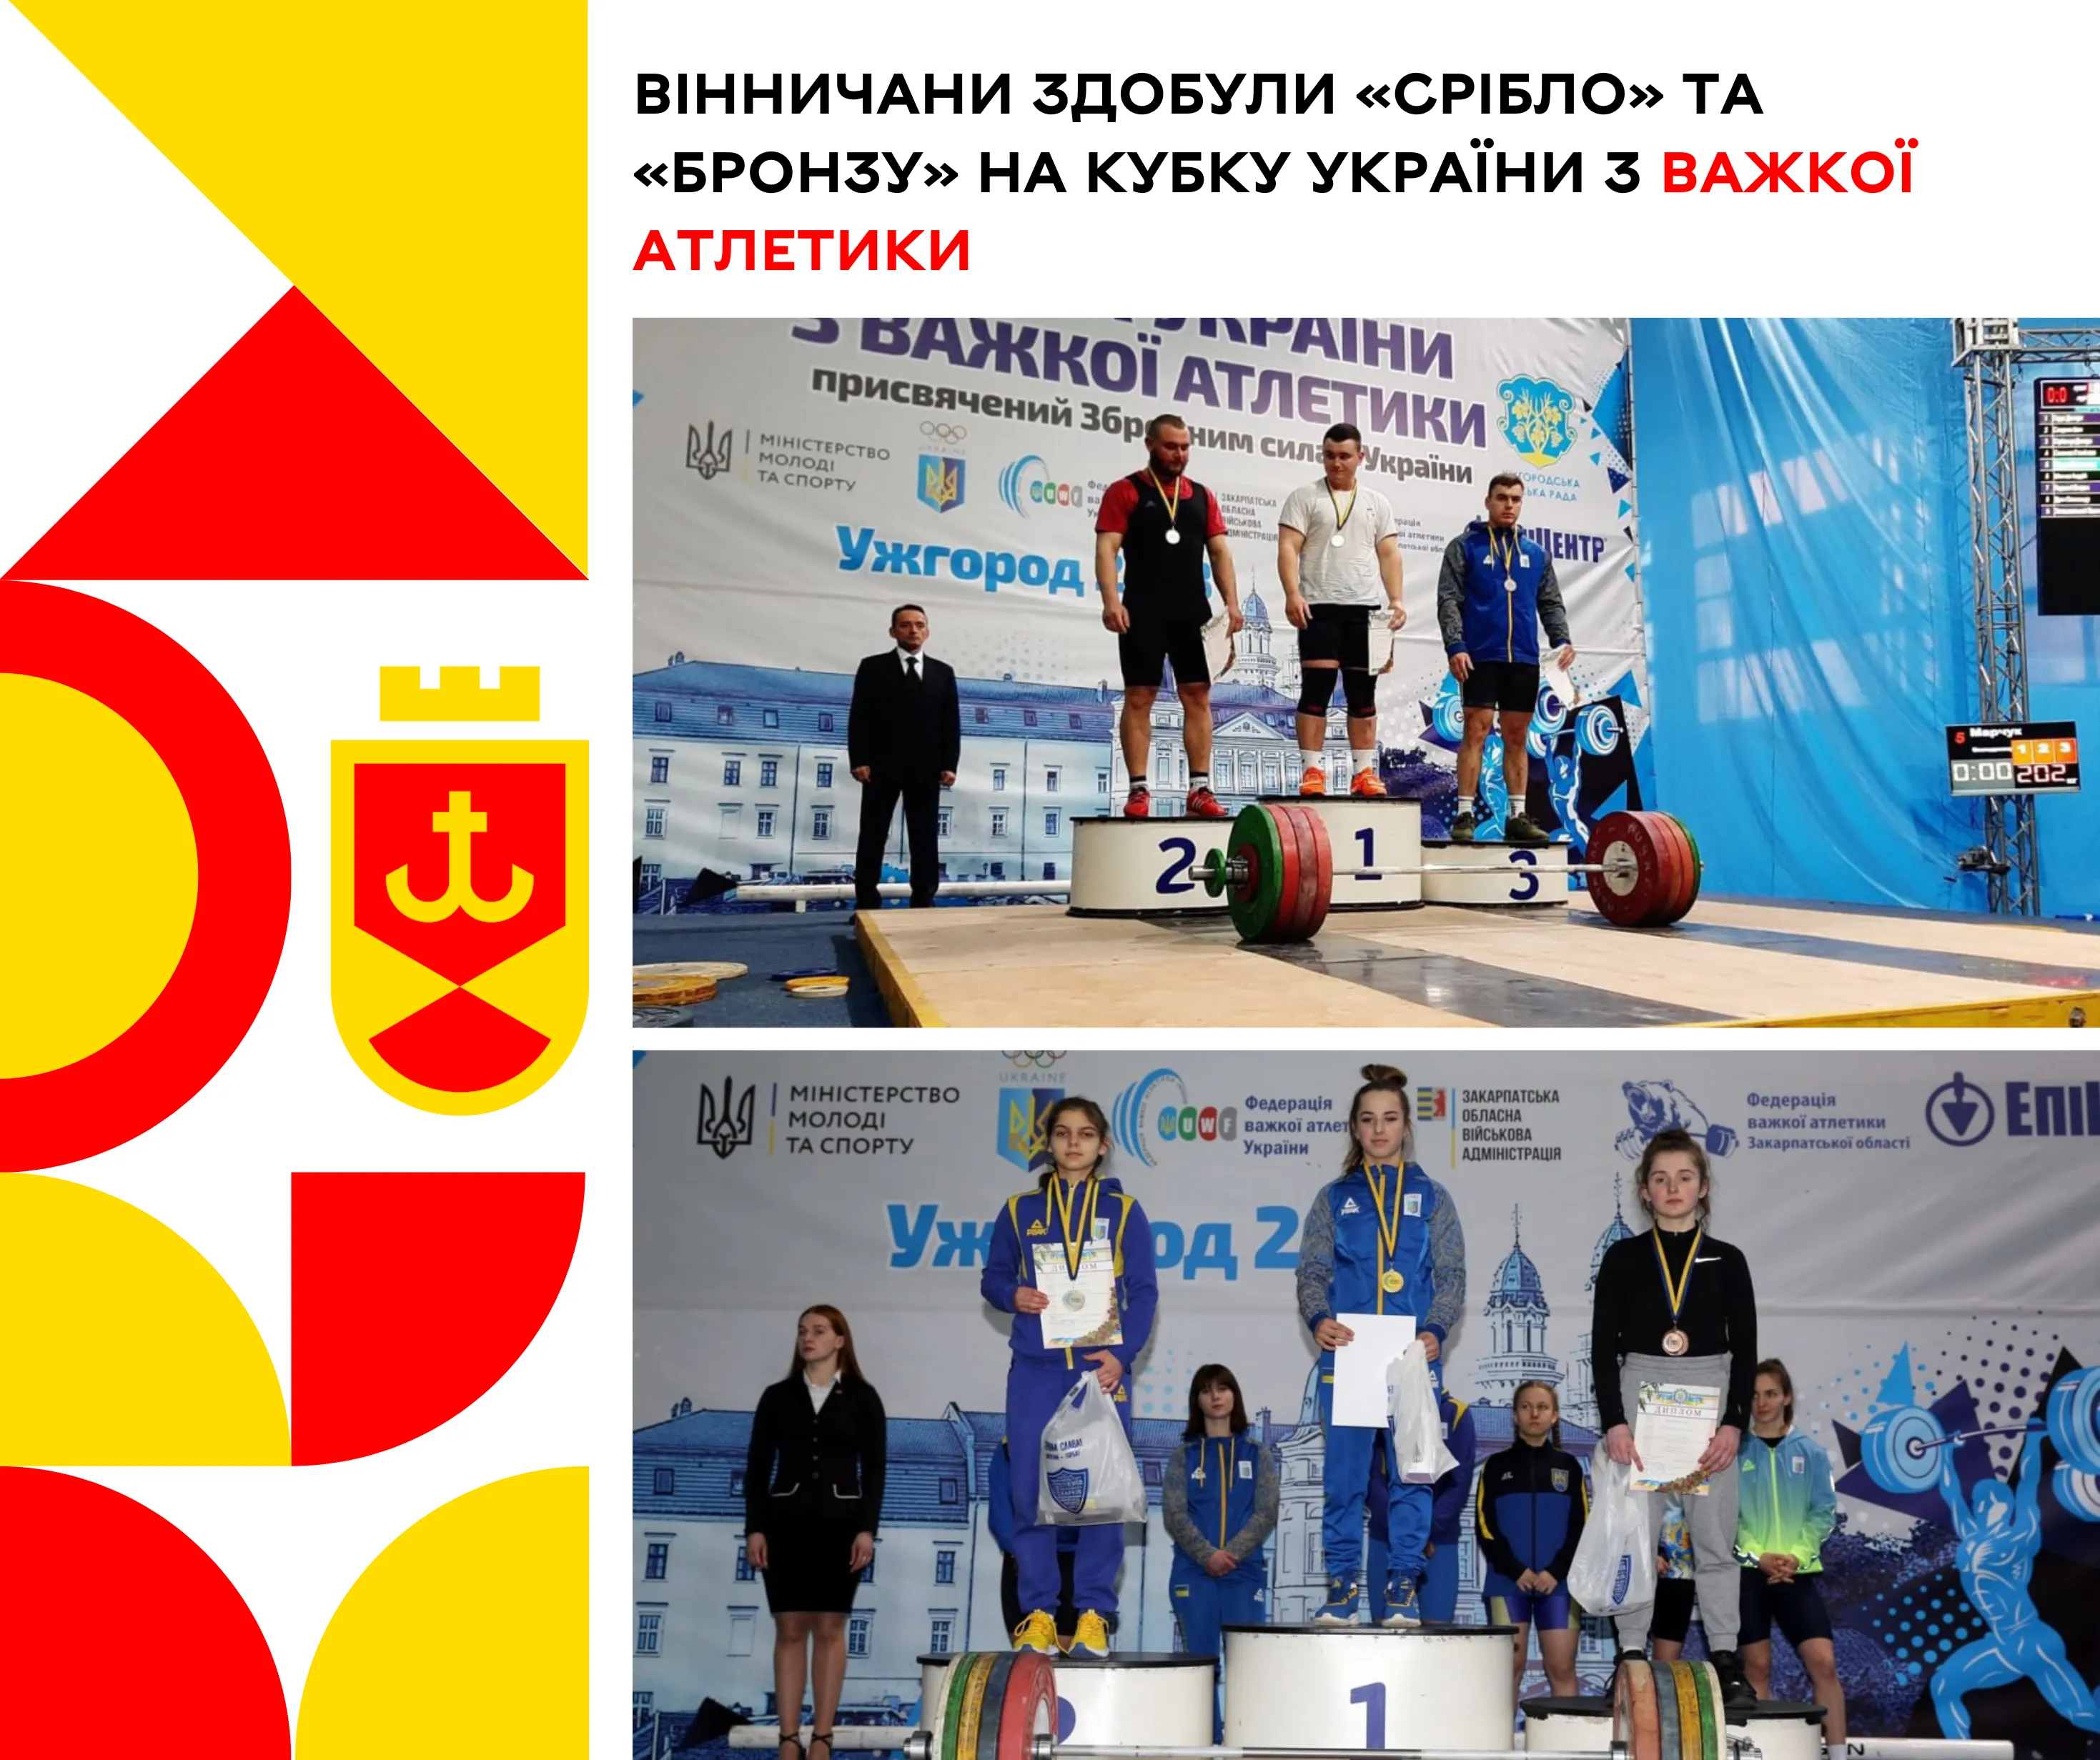 Вінничани вибороли «срібло» та «бронзу» на кубку України з важкої атлетики